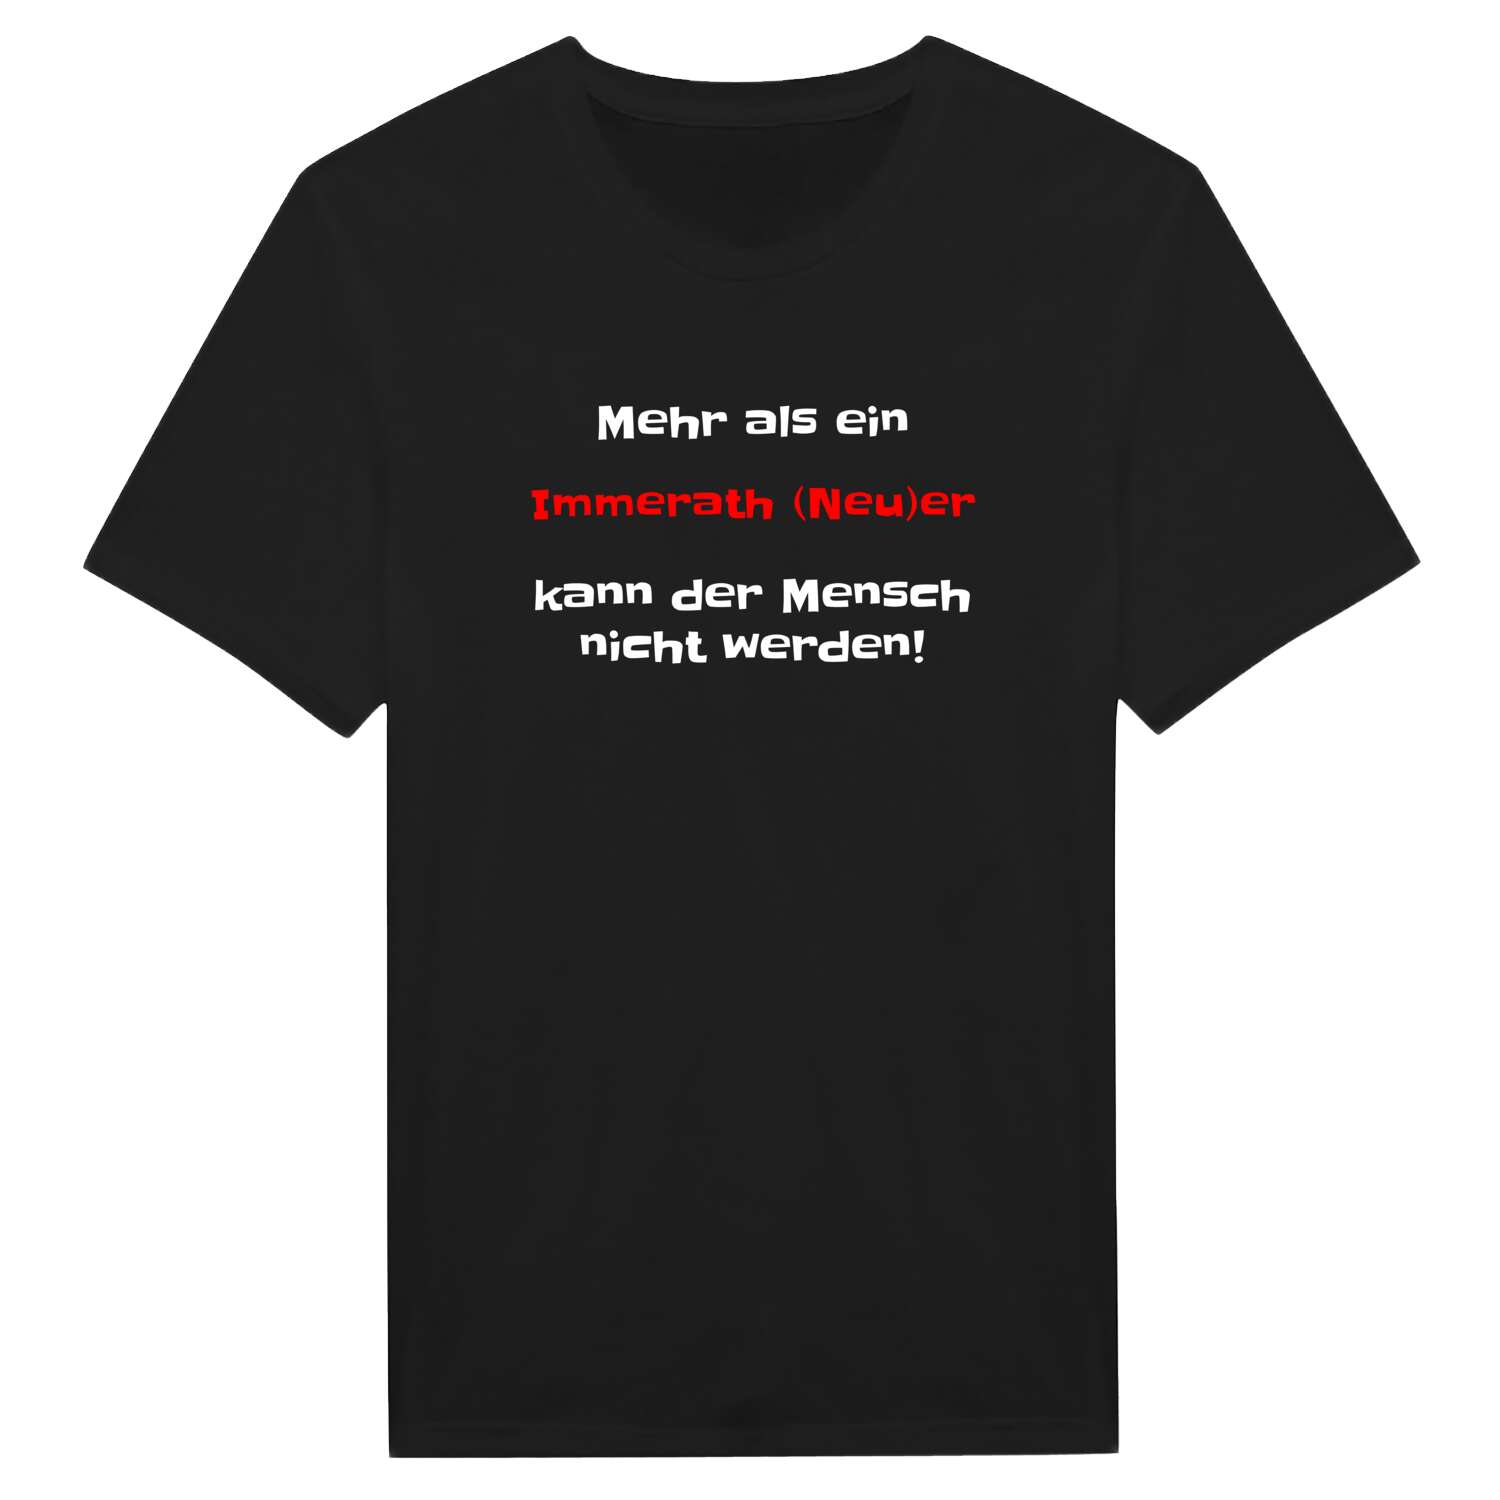 Immerath (Neu) T-Shirt »Mehr als ein«